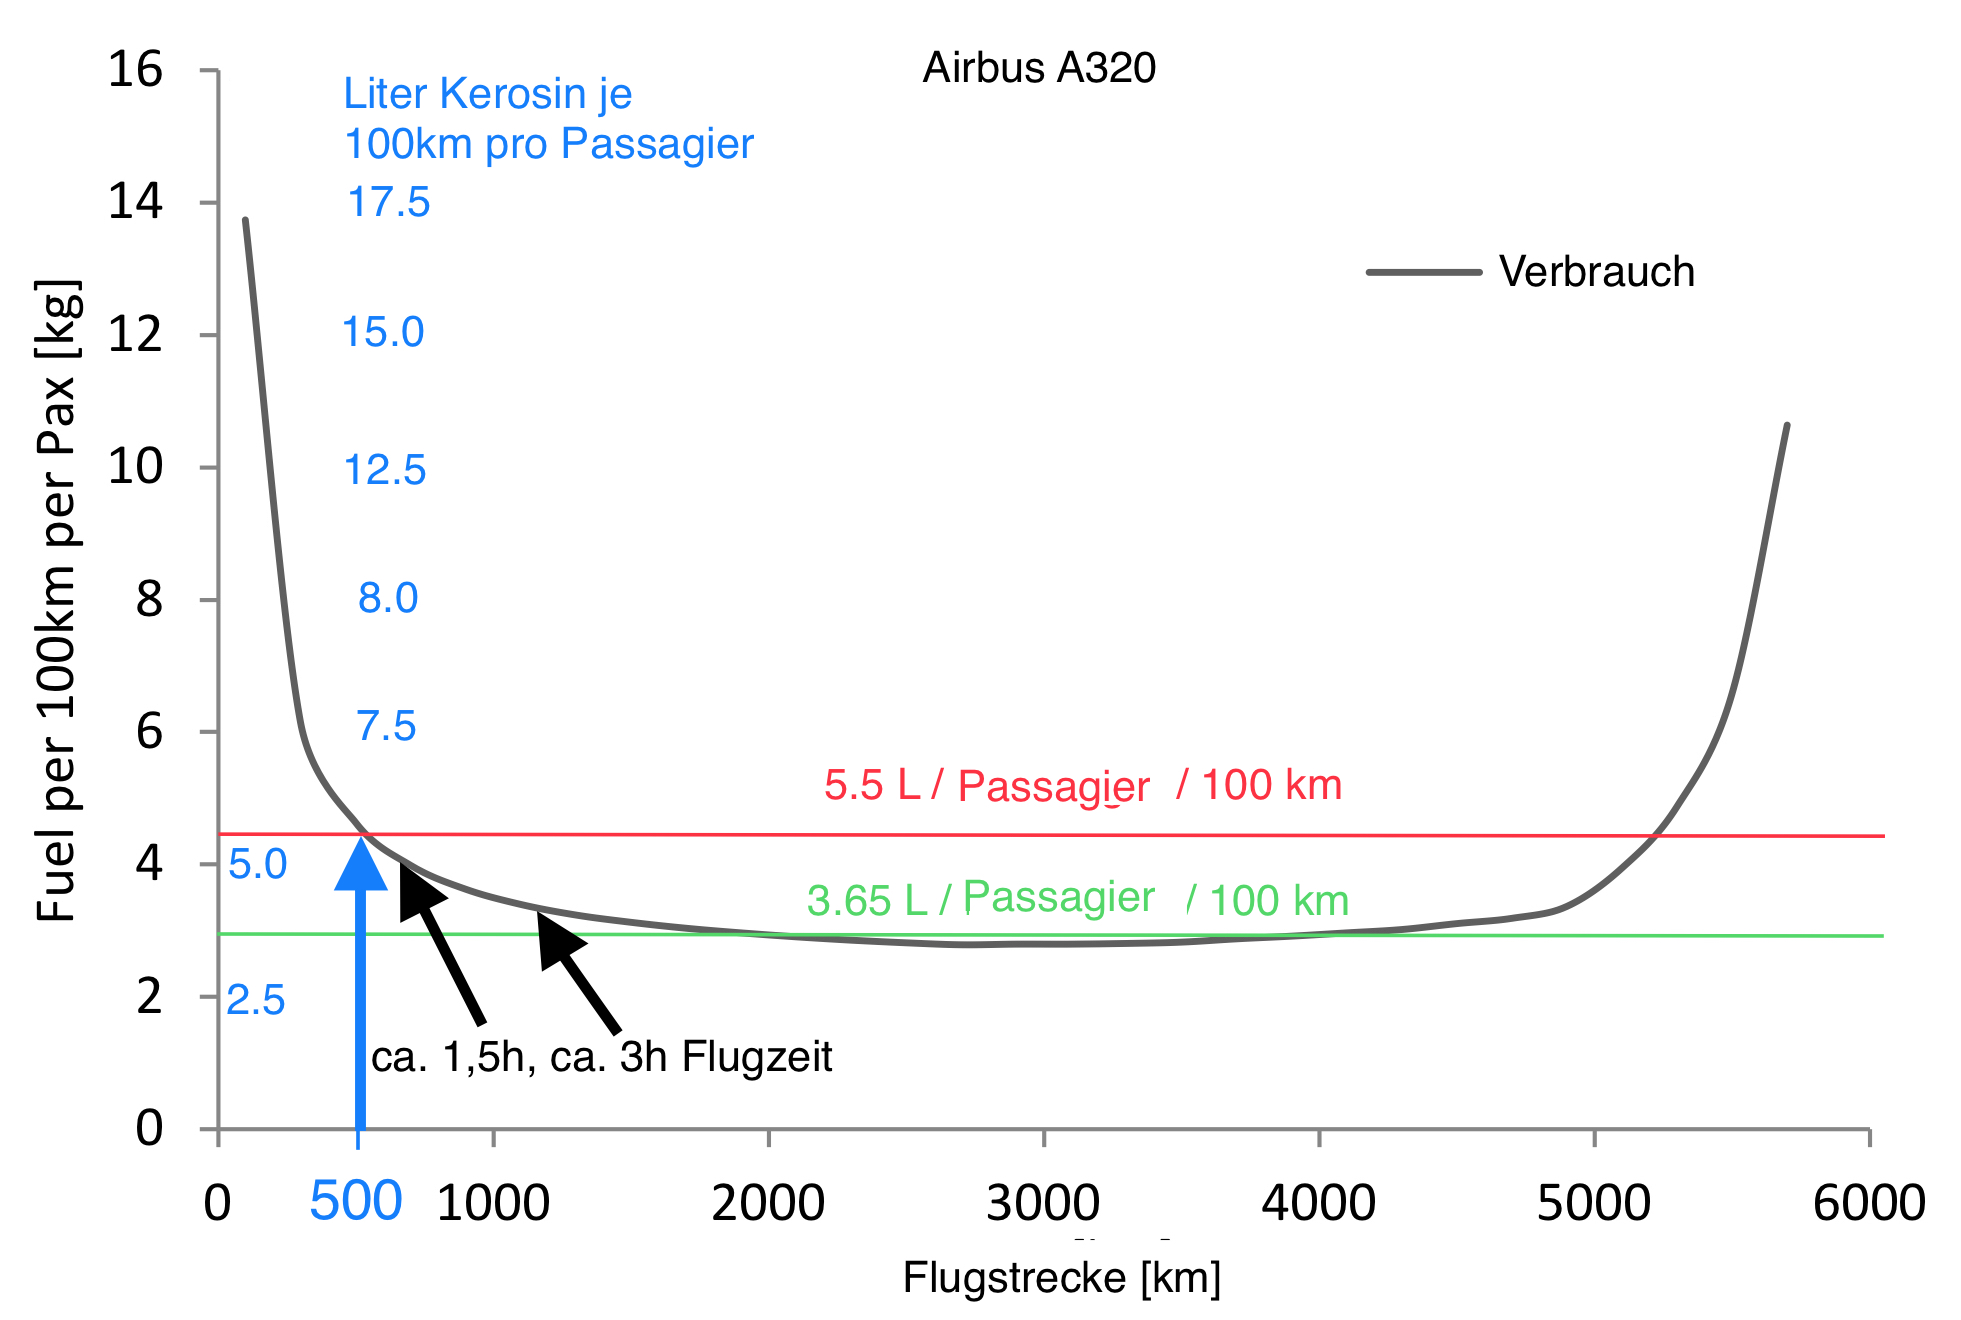 A320 Verbrauch je 100km